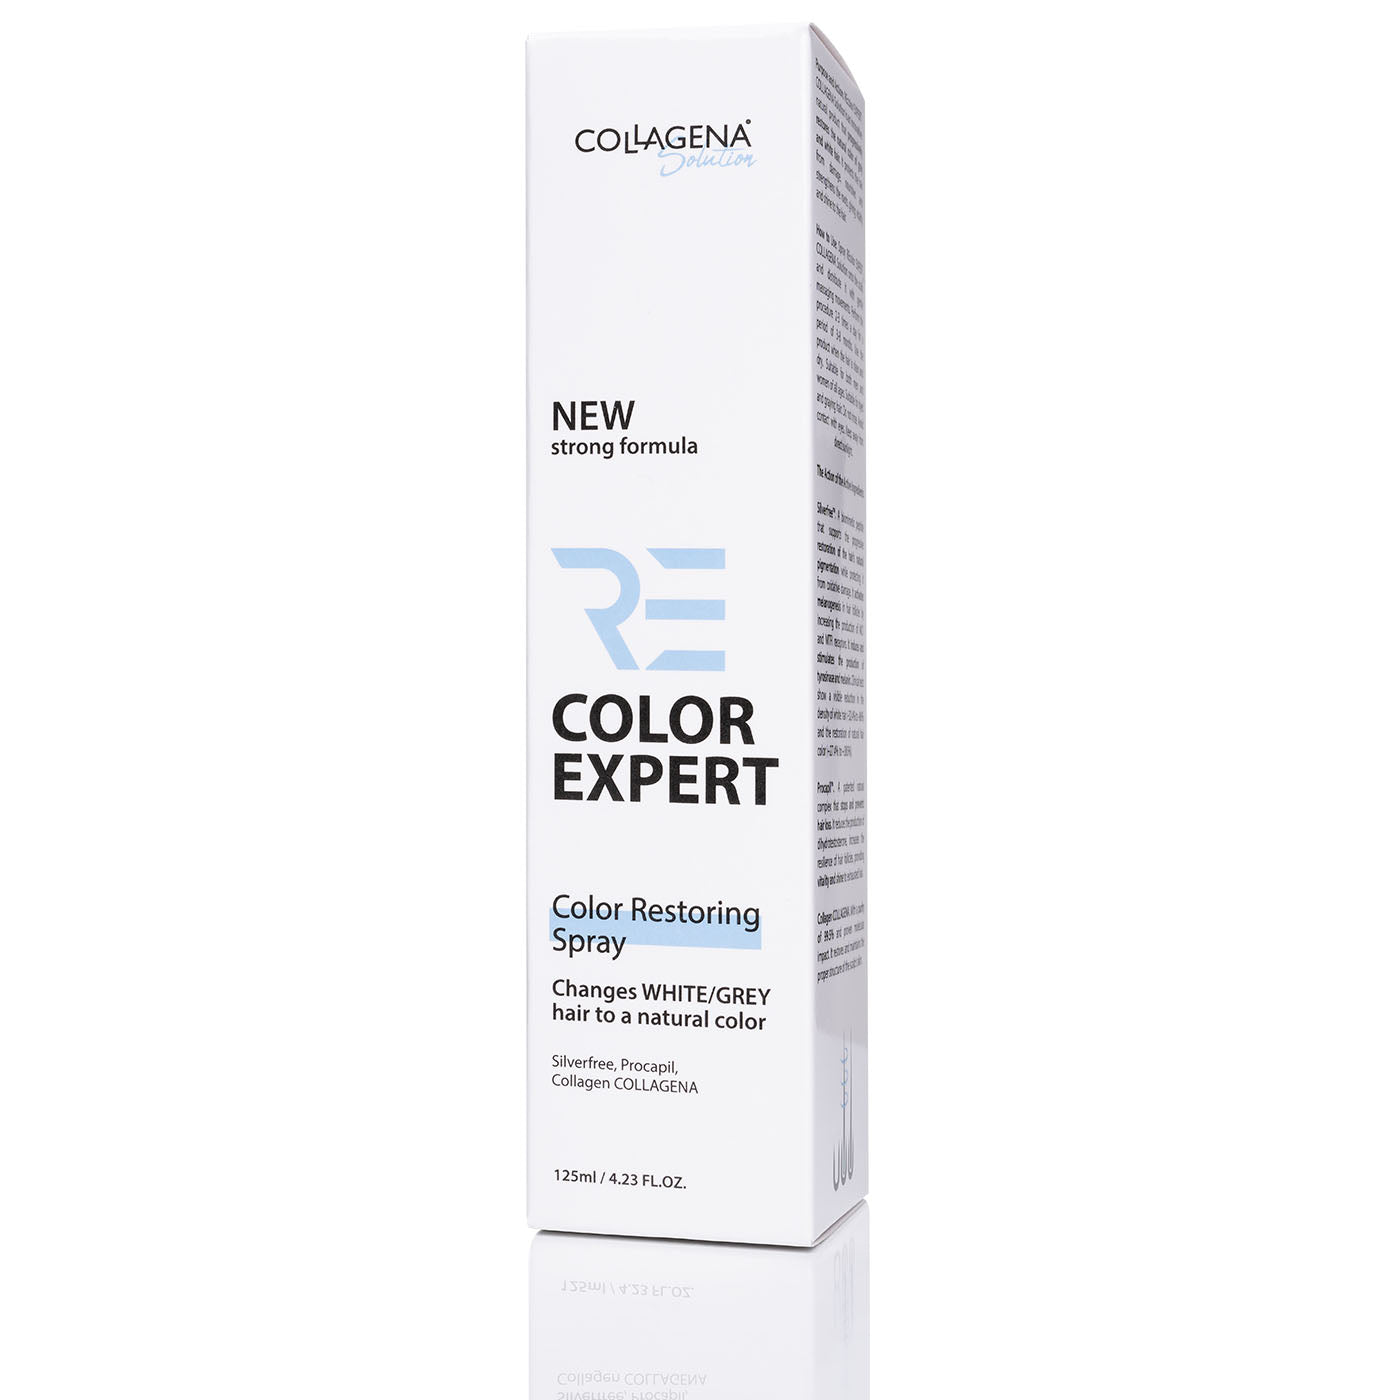 REcolor EXPERT NOU Formula Puternică spray pentru restabilirea culorii naturale a părului alb-grizonat, COLLAGENA Solution, 125 ml.